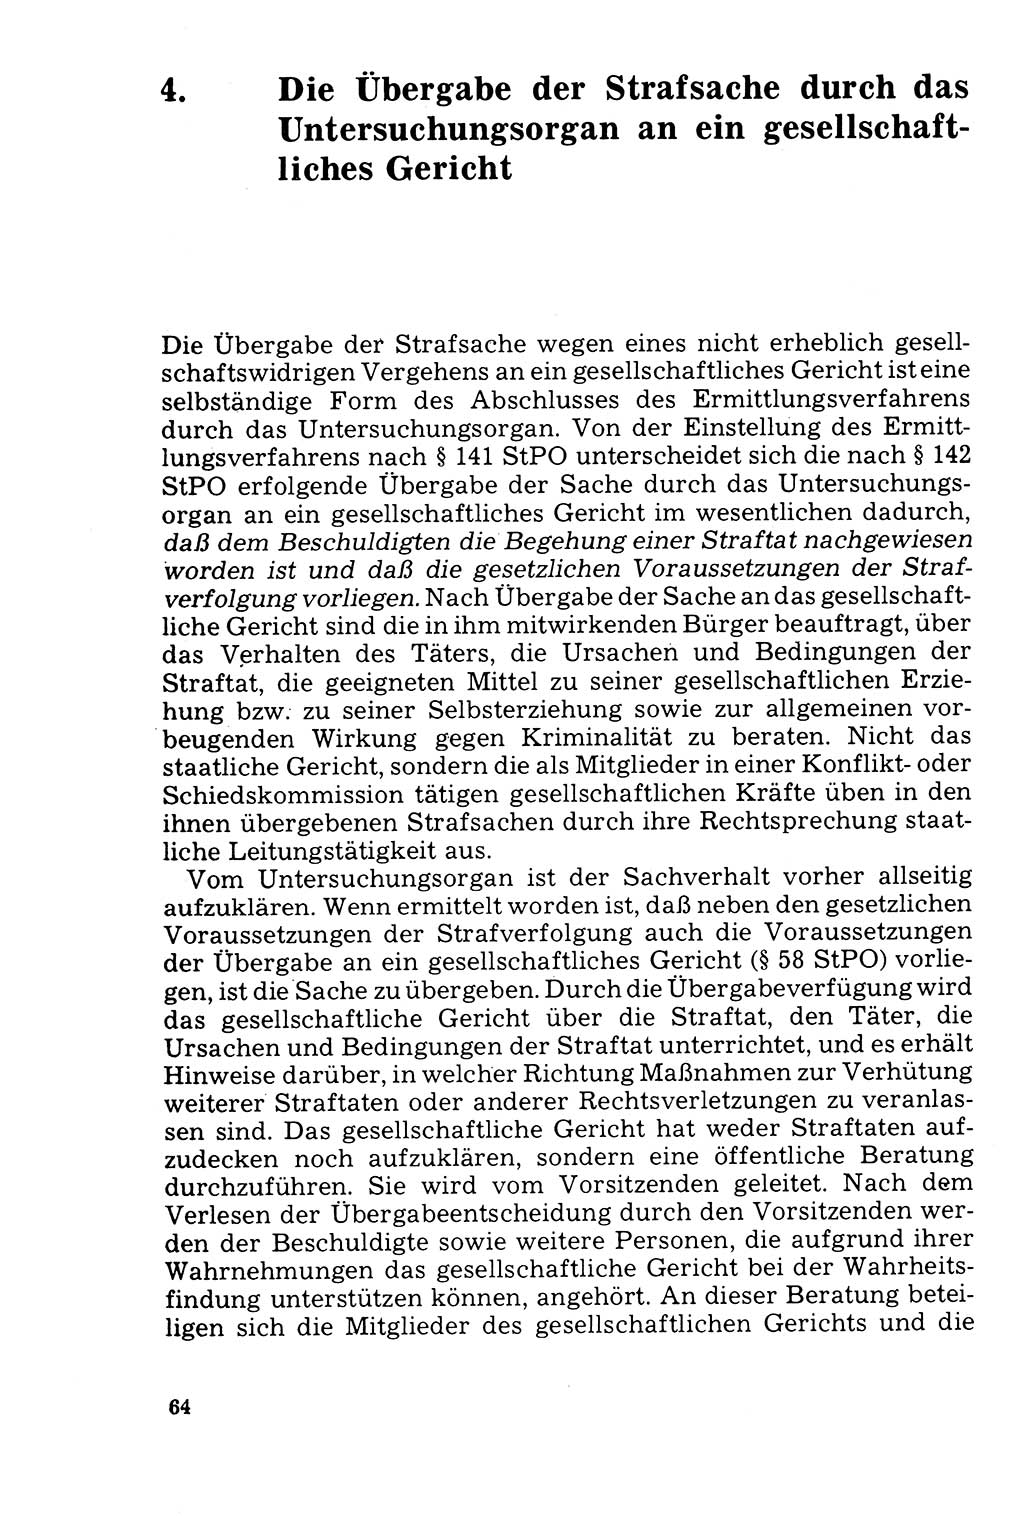 Der Abschluß des Ermittlungsverfahrens [Deutsche Demokratische Republik (DDR)] 1978, Seite 64 (Abschl. EV DDR 1978, S. 64)